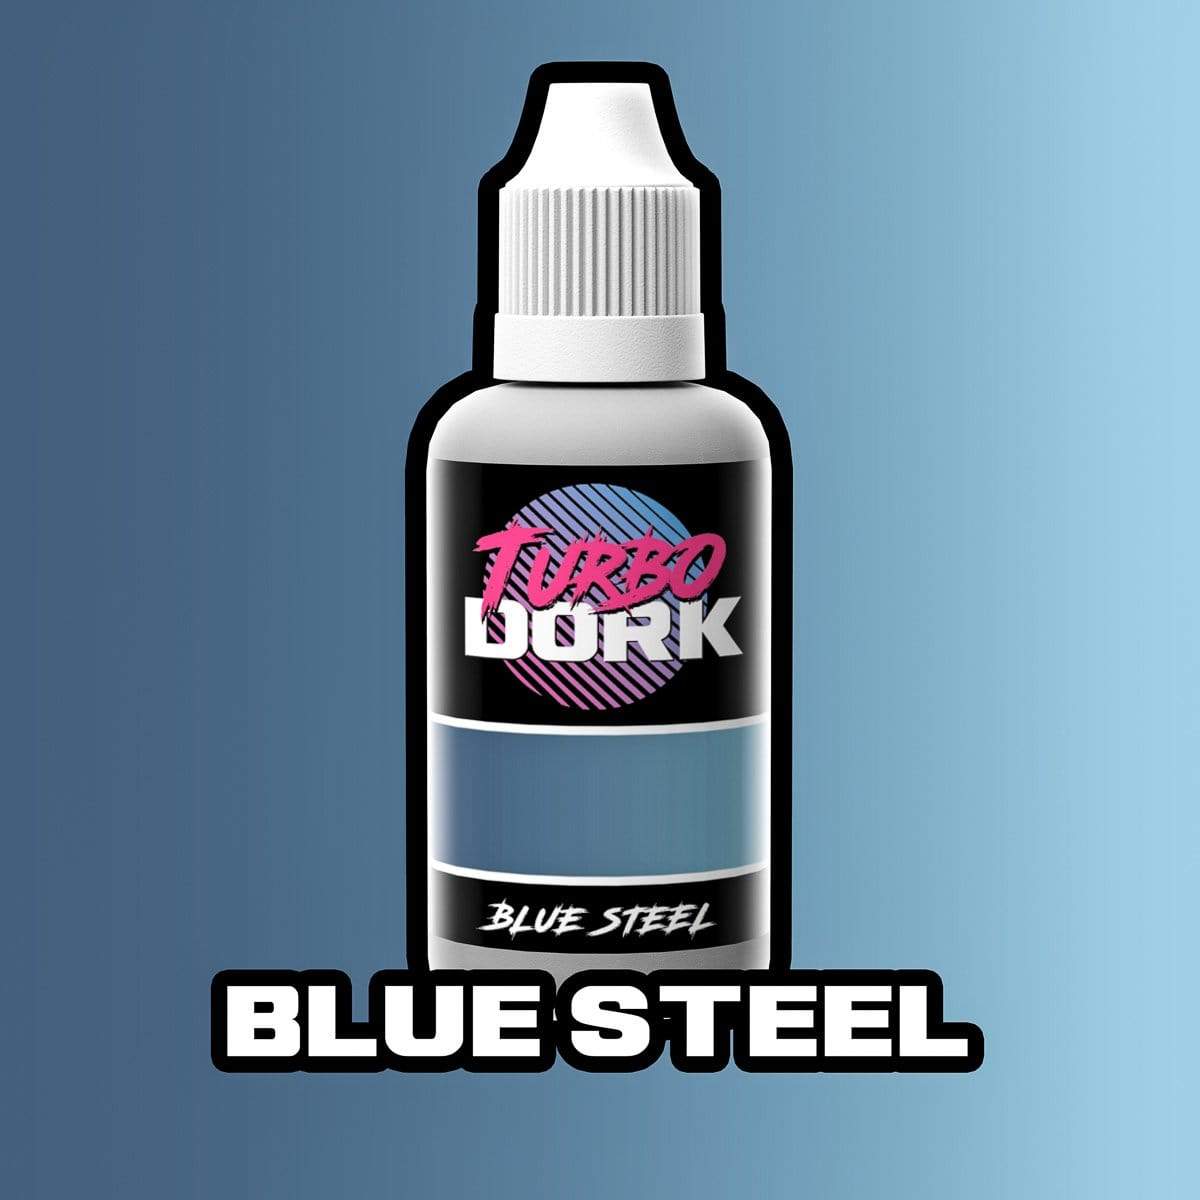 Blue Steel Metallic Acrylic Paint Metallic Turbo Dork Exit 23 Games Blue Steel Metallic Acrylic Paint